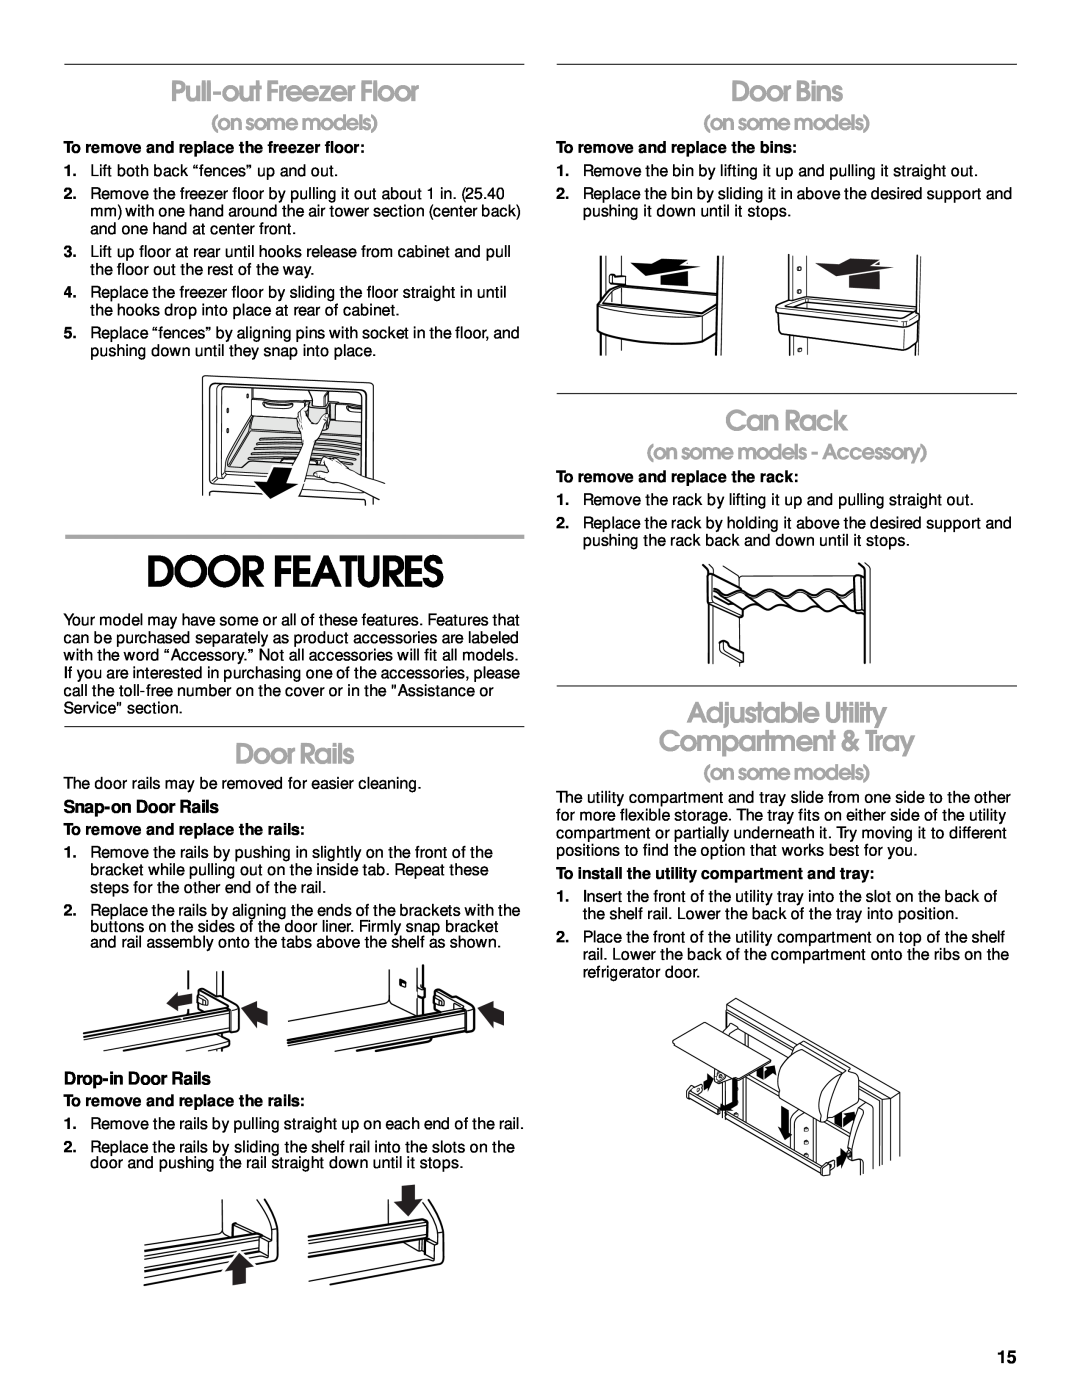 Crosley 2212430 manual Door Features, Pull-out Freezer Floor, Door Bins, Can Rack, on some models, Snap-on Door Rails 